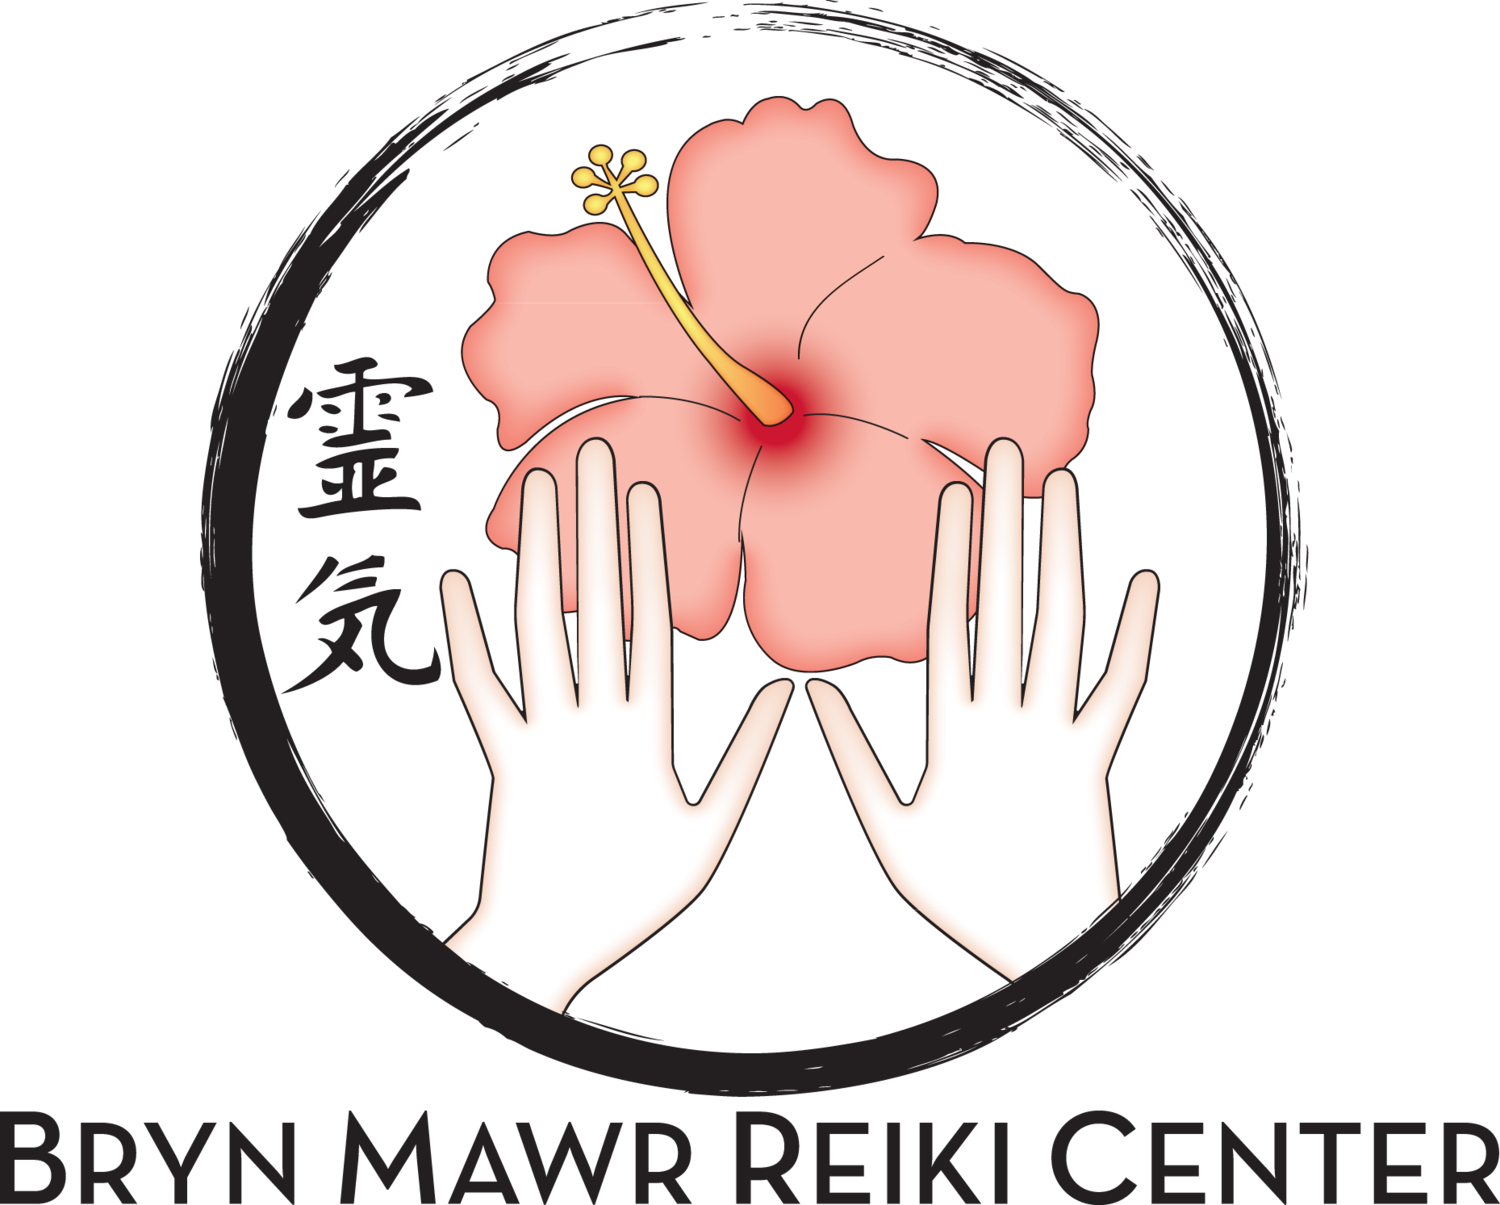 Bryn Mawr Reiki Center